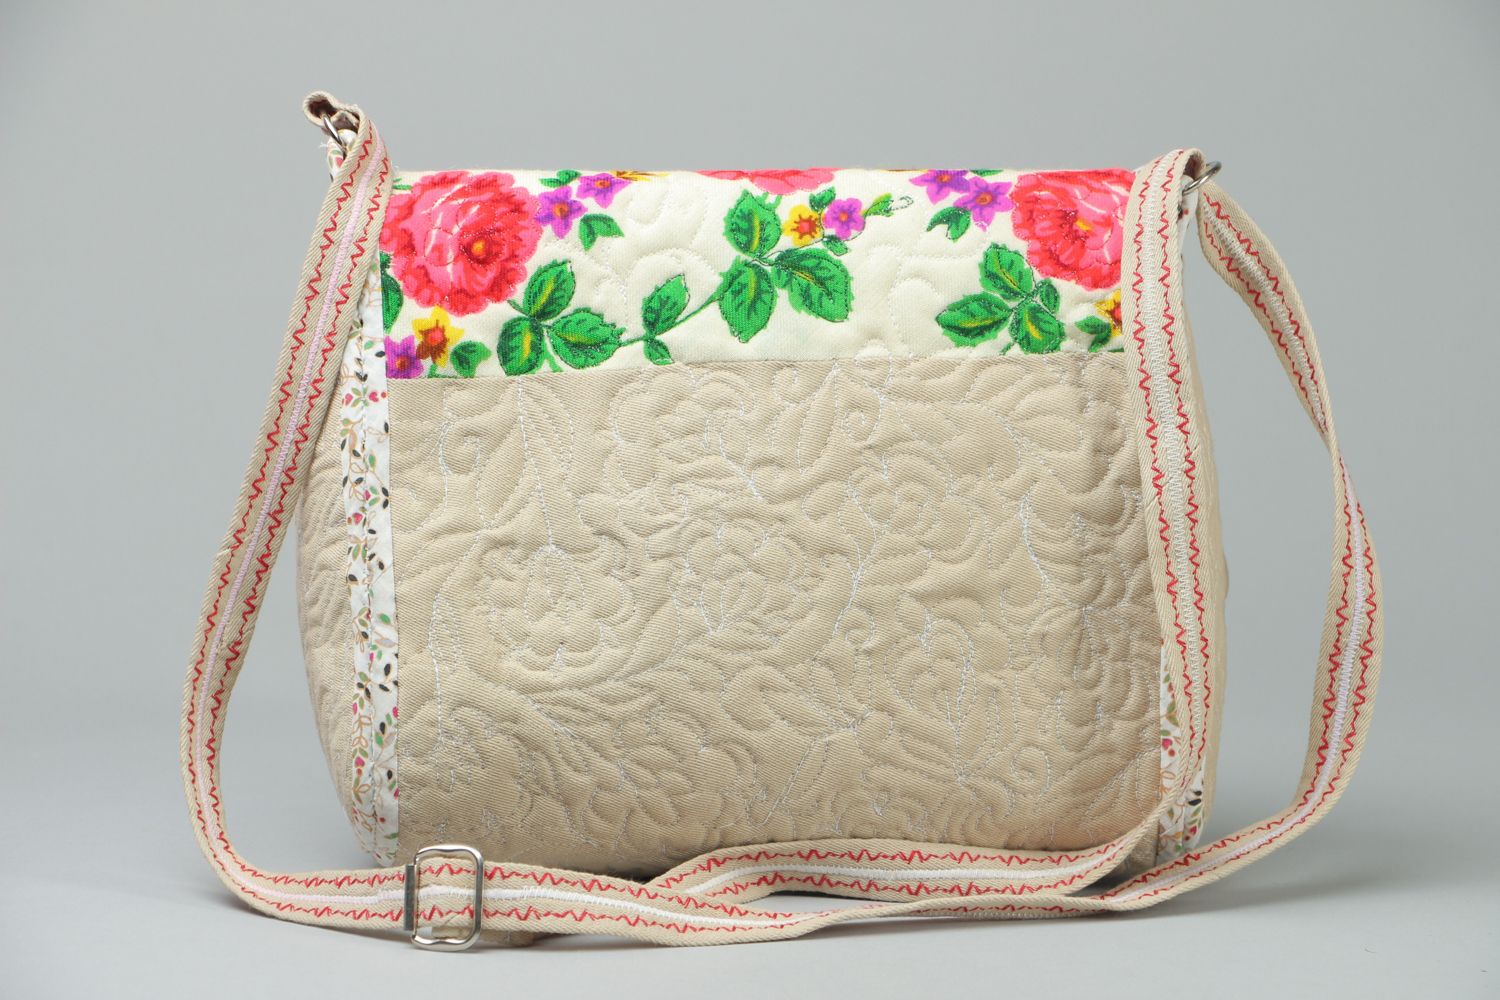 Textil Tasche mit Blumenprint foto 3